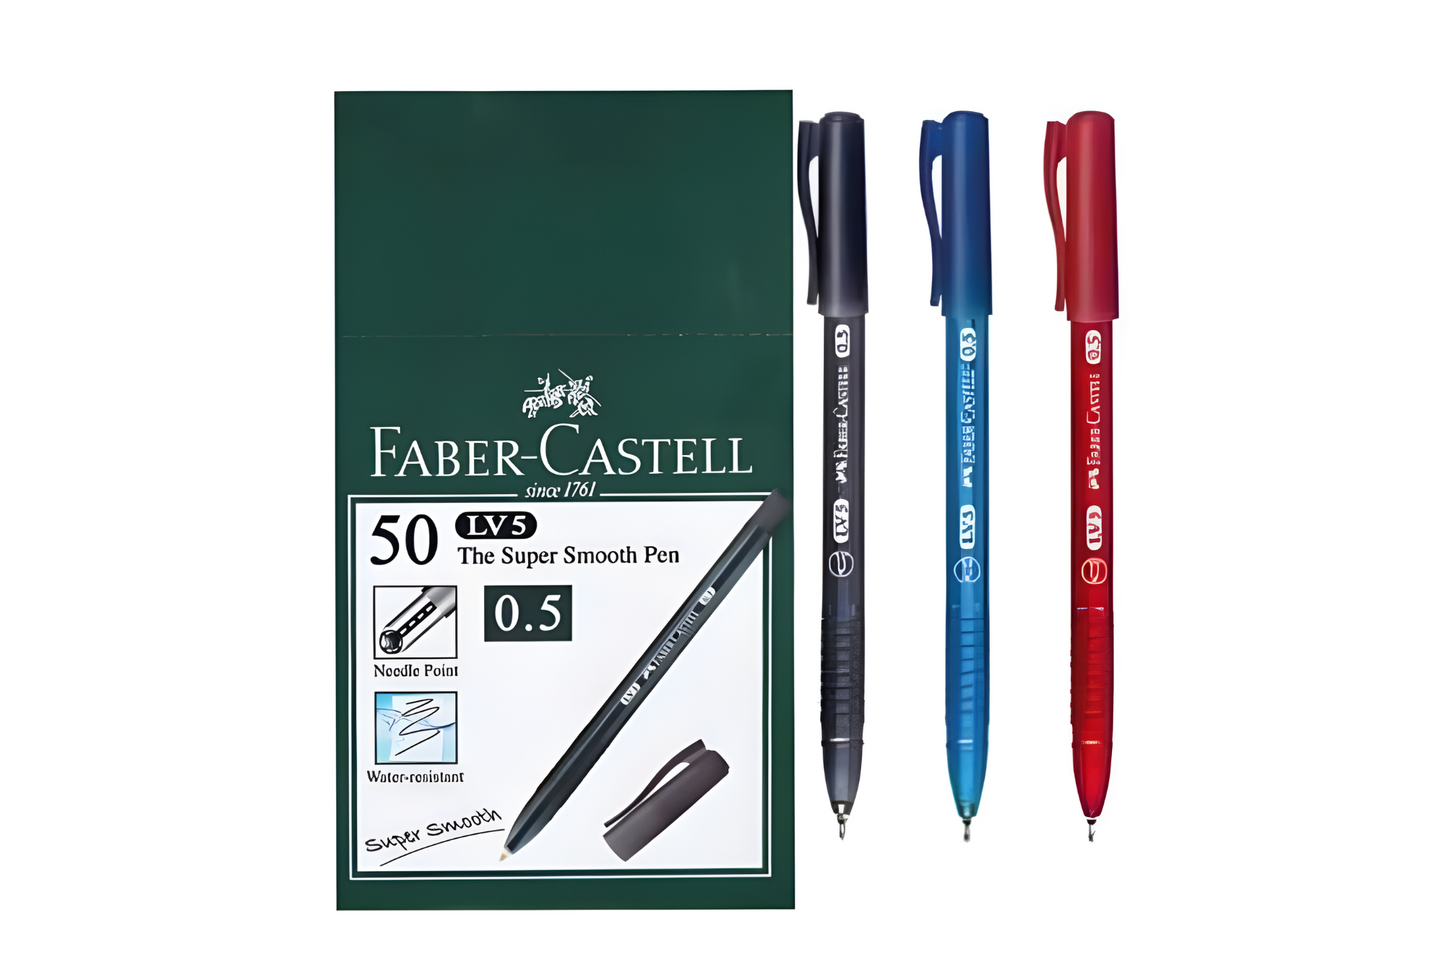 Faber-Castell Ballpen LV5 | 50pcs